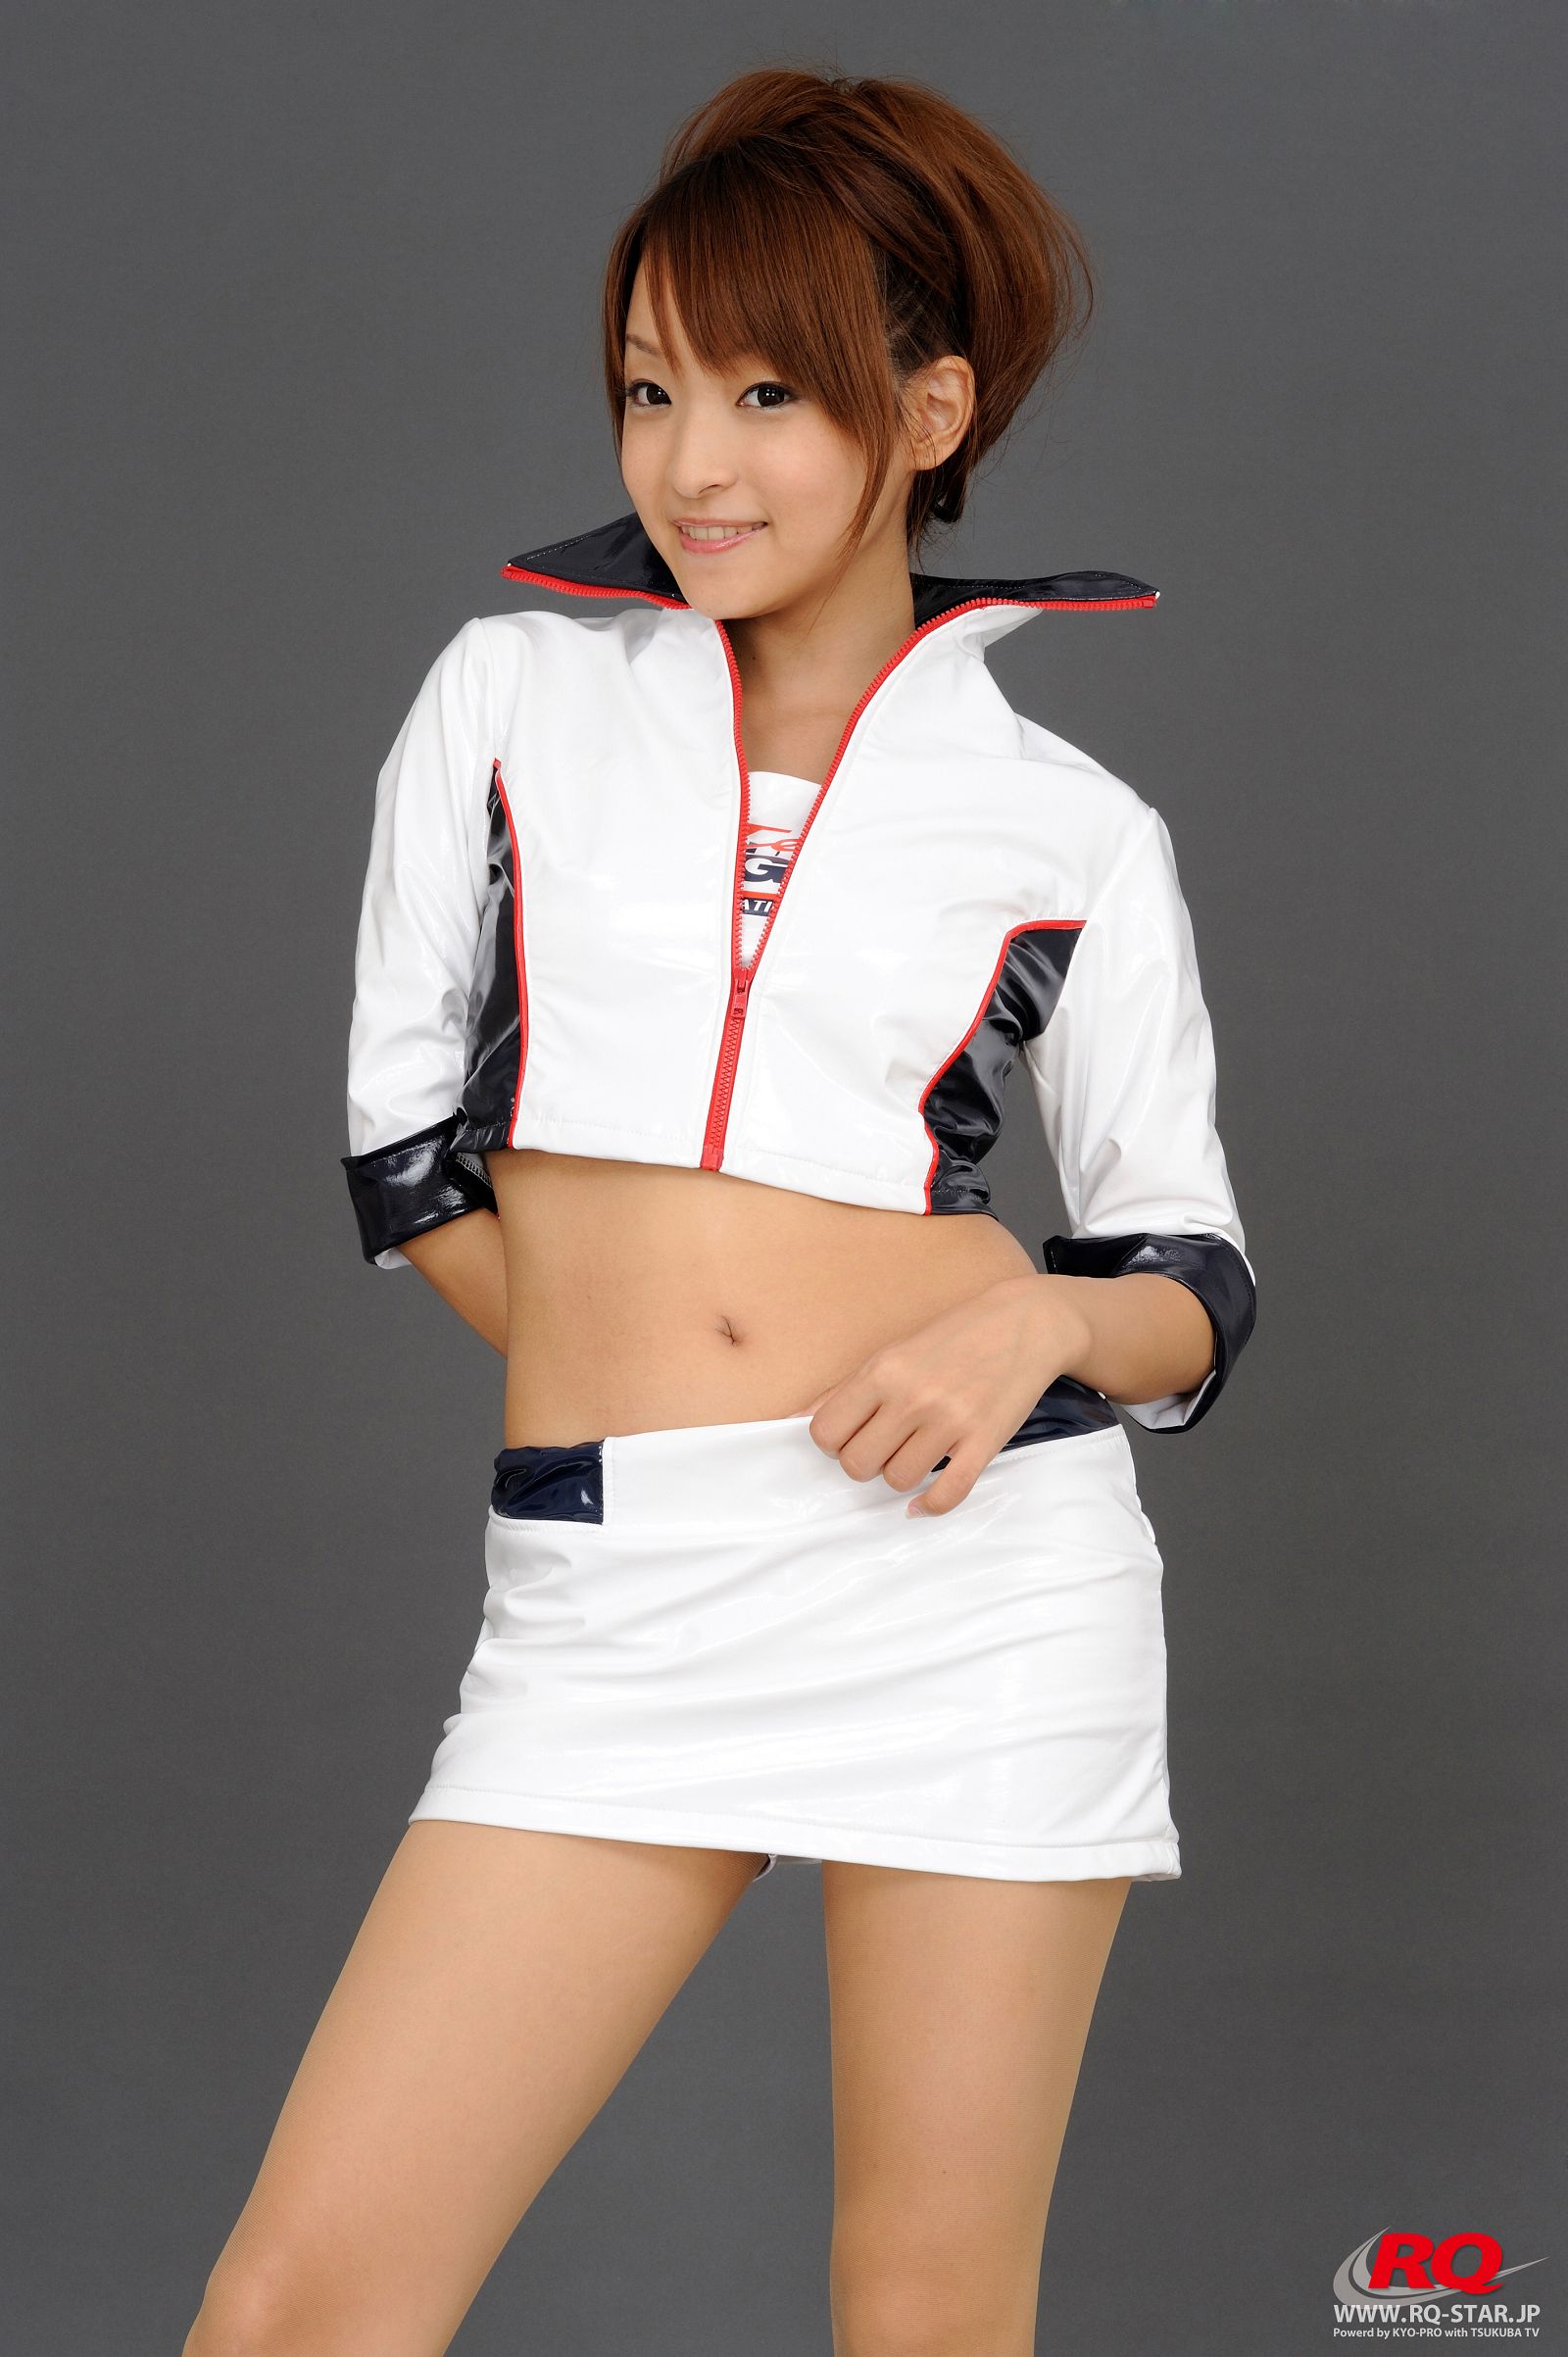 [RQ-STAR美女] NO.0080 Mio Aoki 青木未央 Race Queen - 2008 5Zigen3